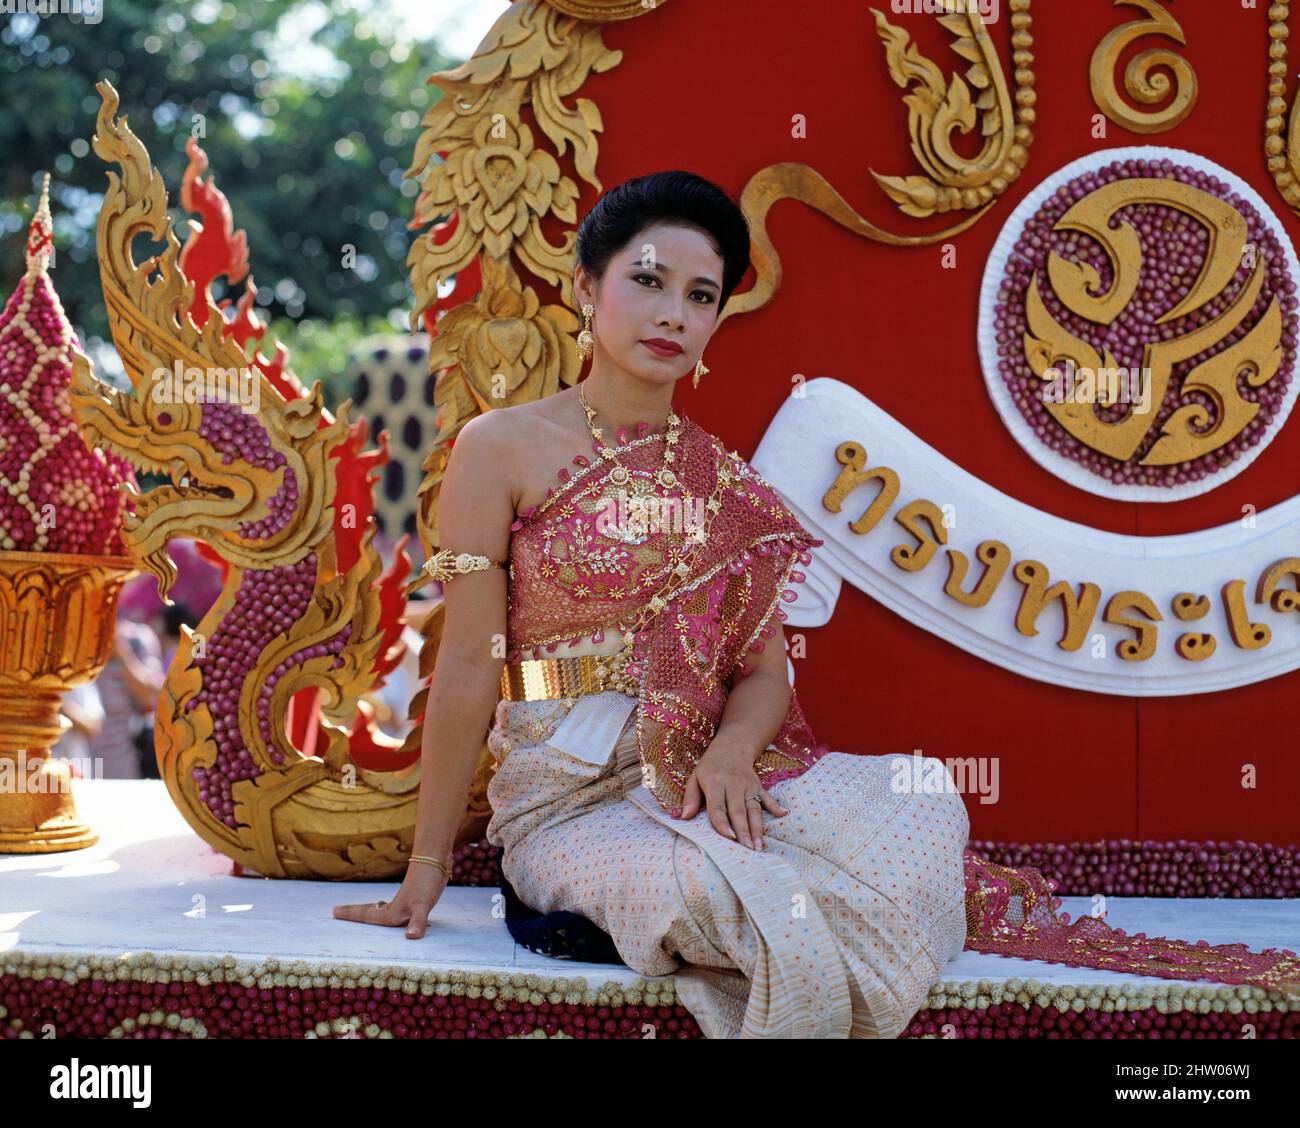 Tailandia. Chiang Mai. Joven tailandesa en el carnaval flotante. Foto de stock